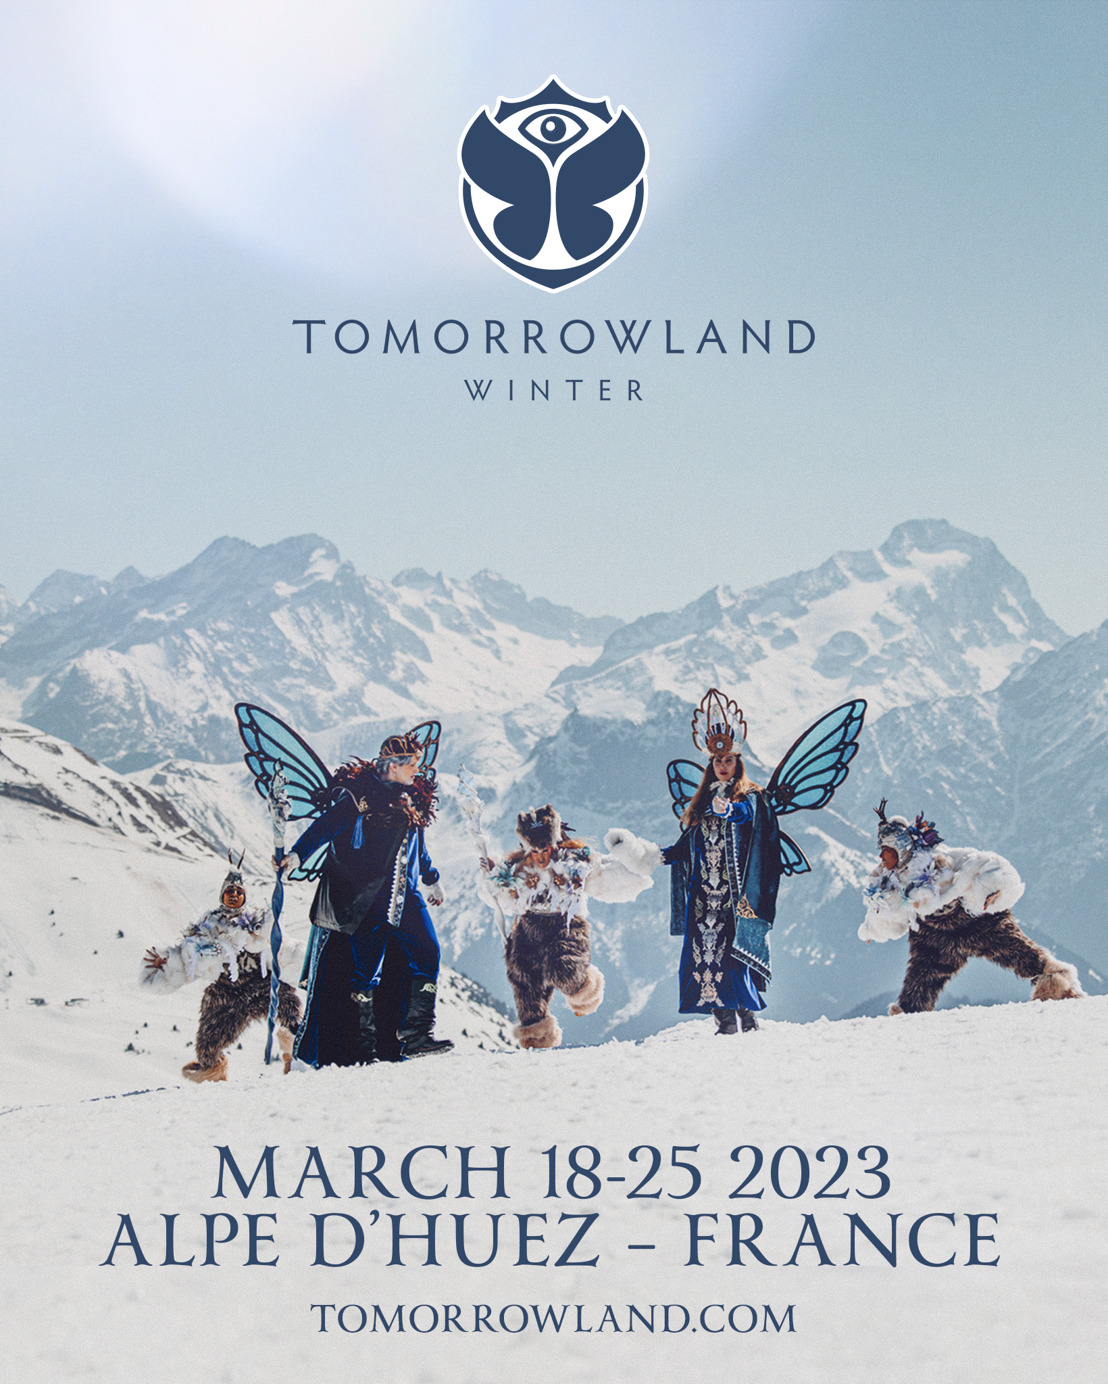 Il est l’heure de planifier vos plus belles vacances d’hiver. Pour vivre une expérience unique de festival et de ski, direction Tomorrowland Winter 2023.